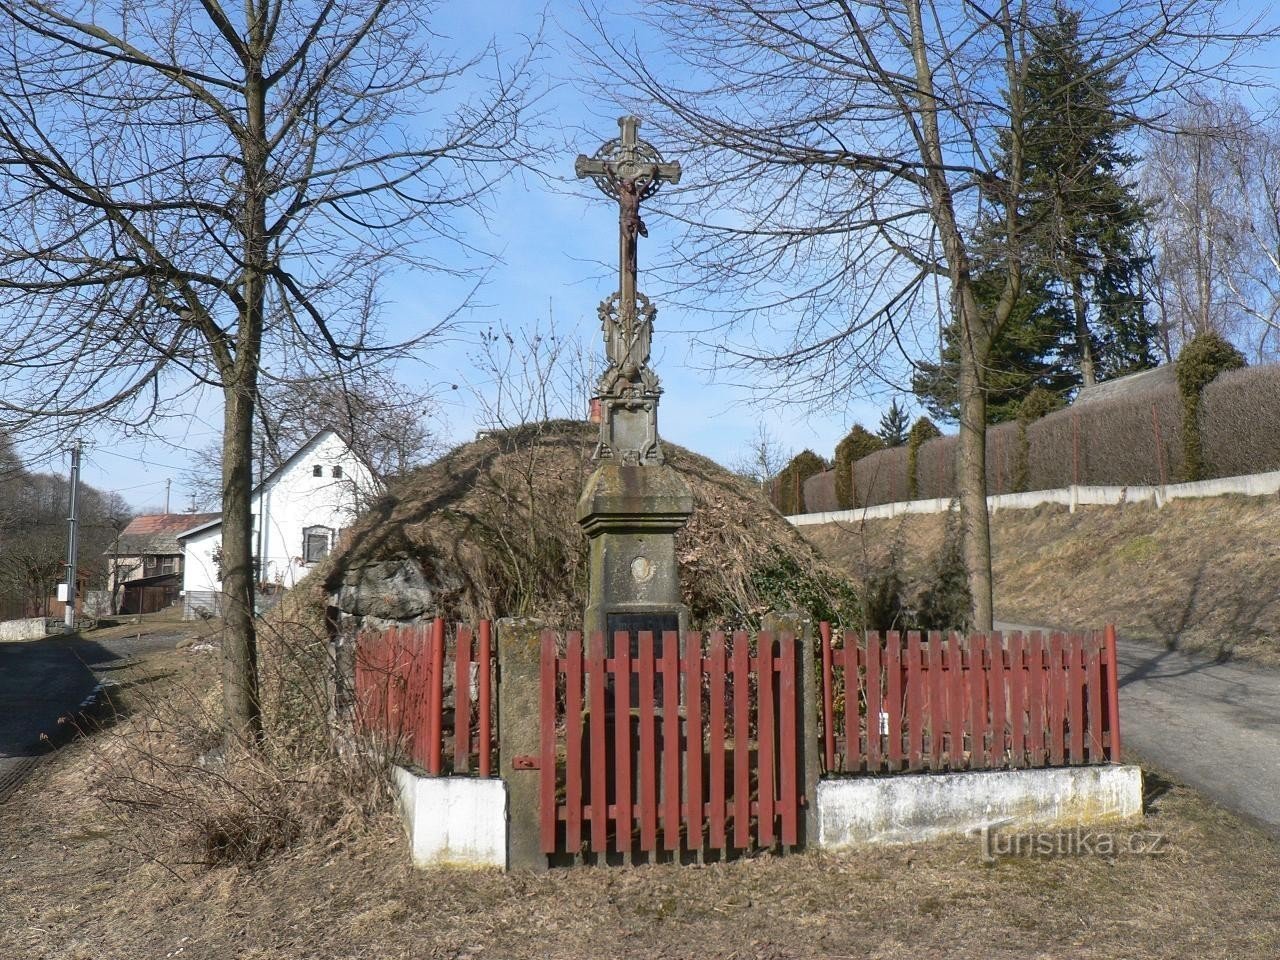 Velenovy, ένας σταυρός στο χωριό